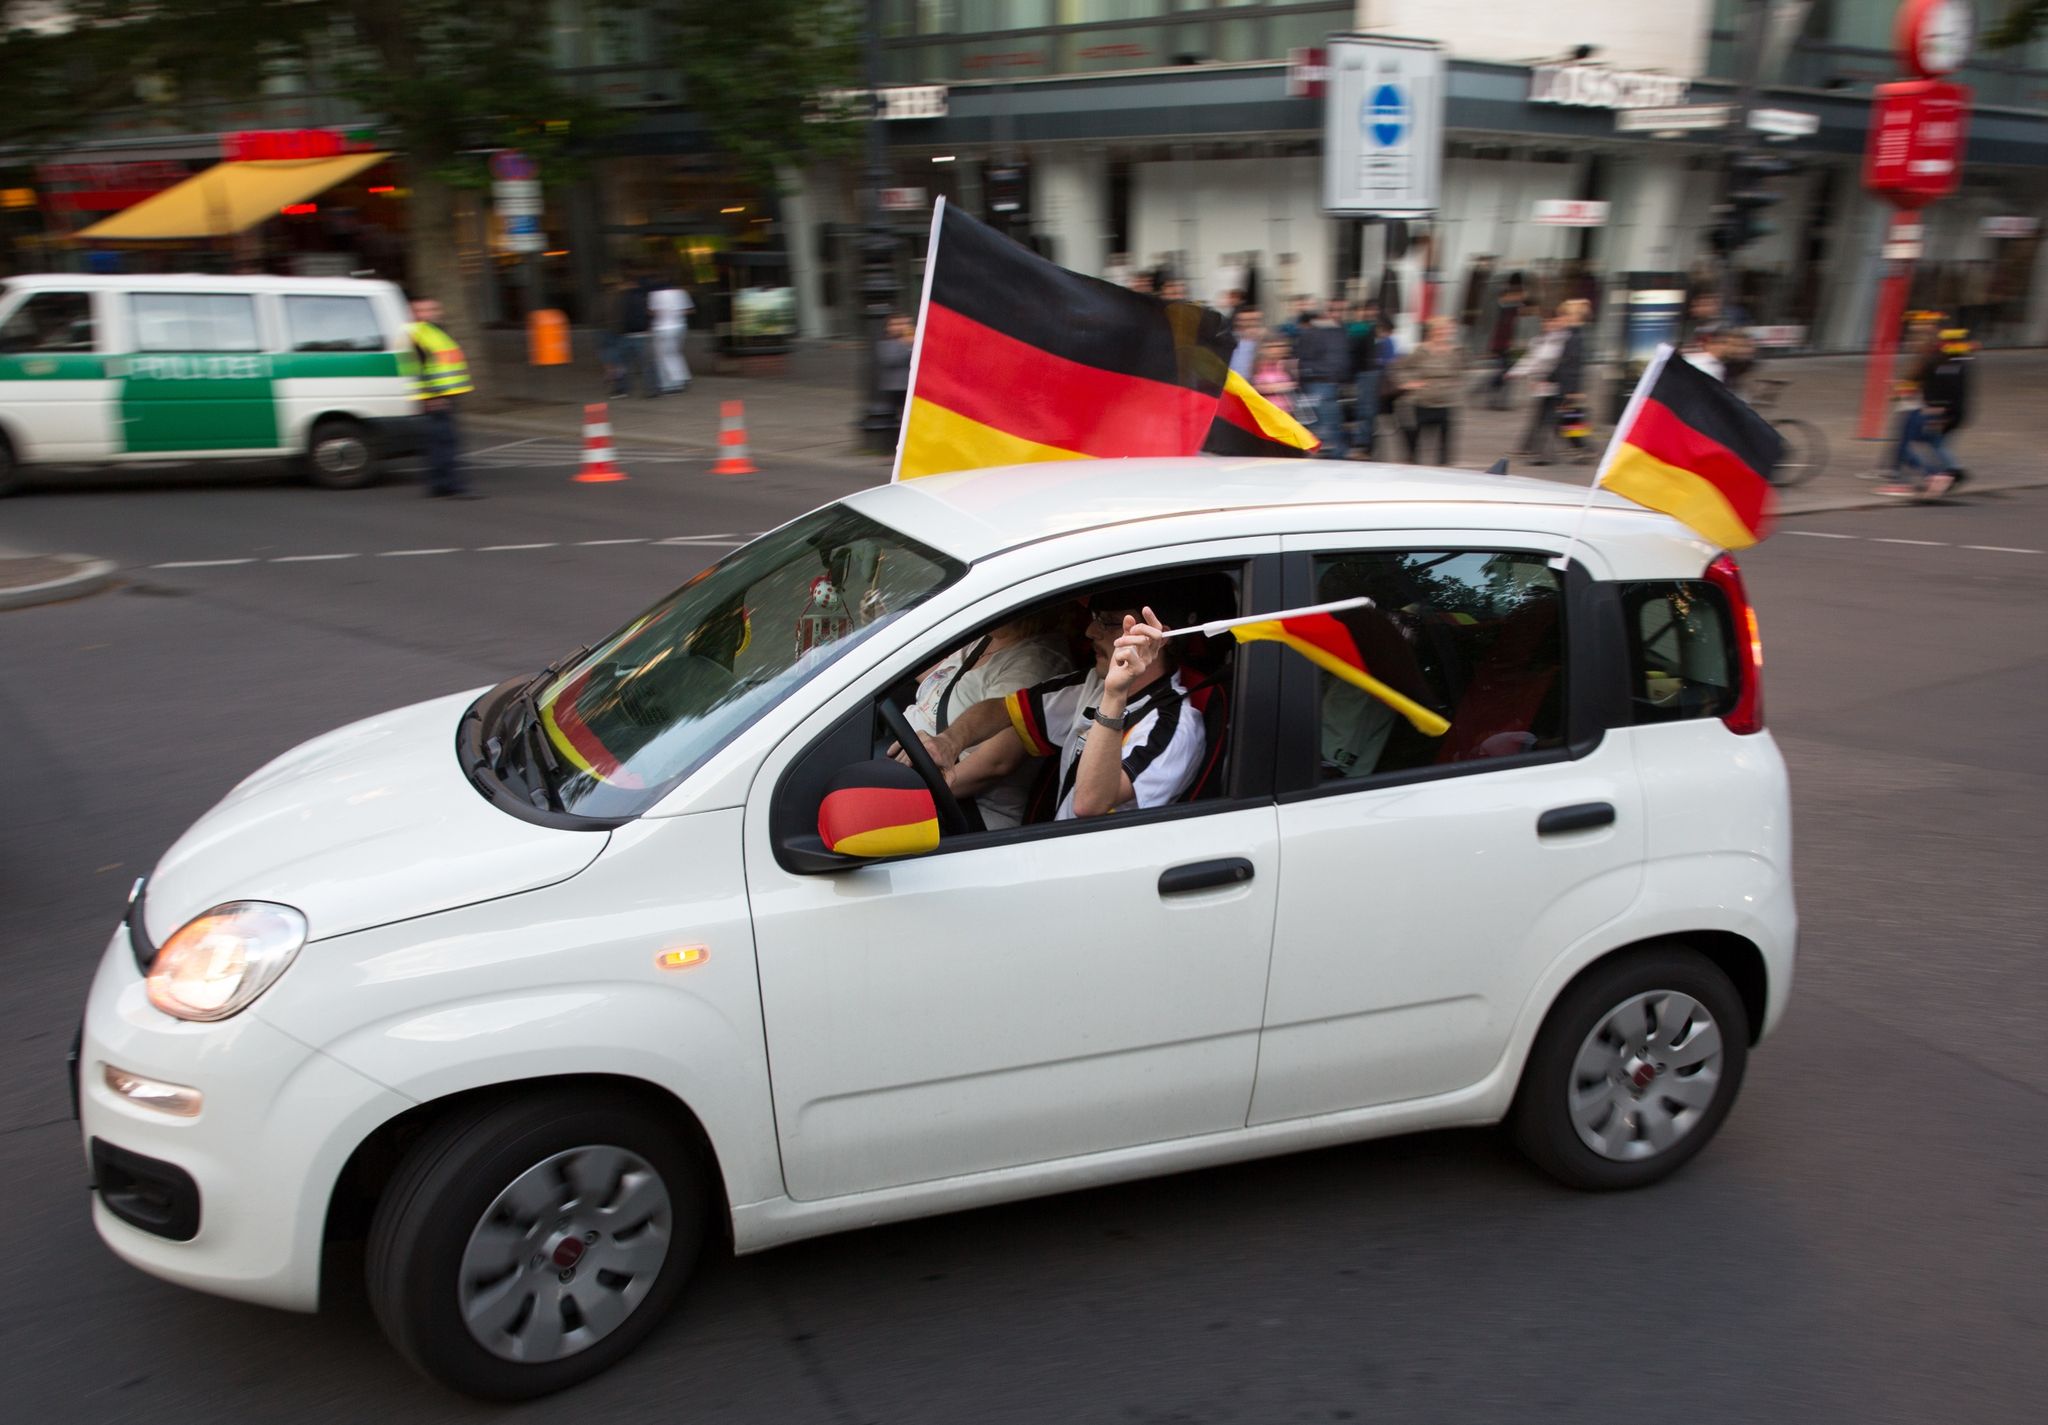 Fußballfans feiern einen Sieg der Deutschen mit einem Autokorso - alles ist dabei aber nicht erlaubt.